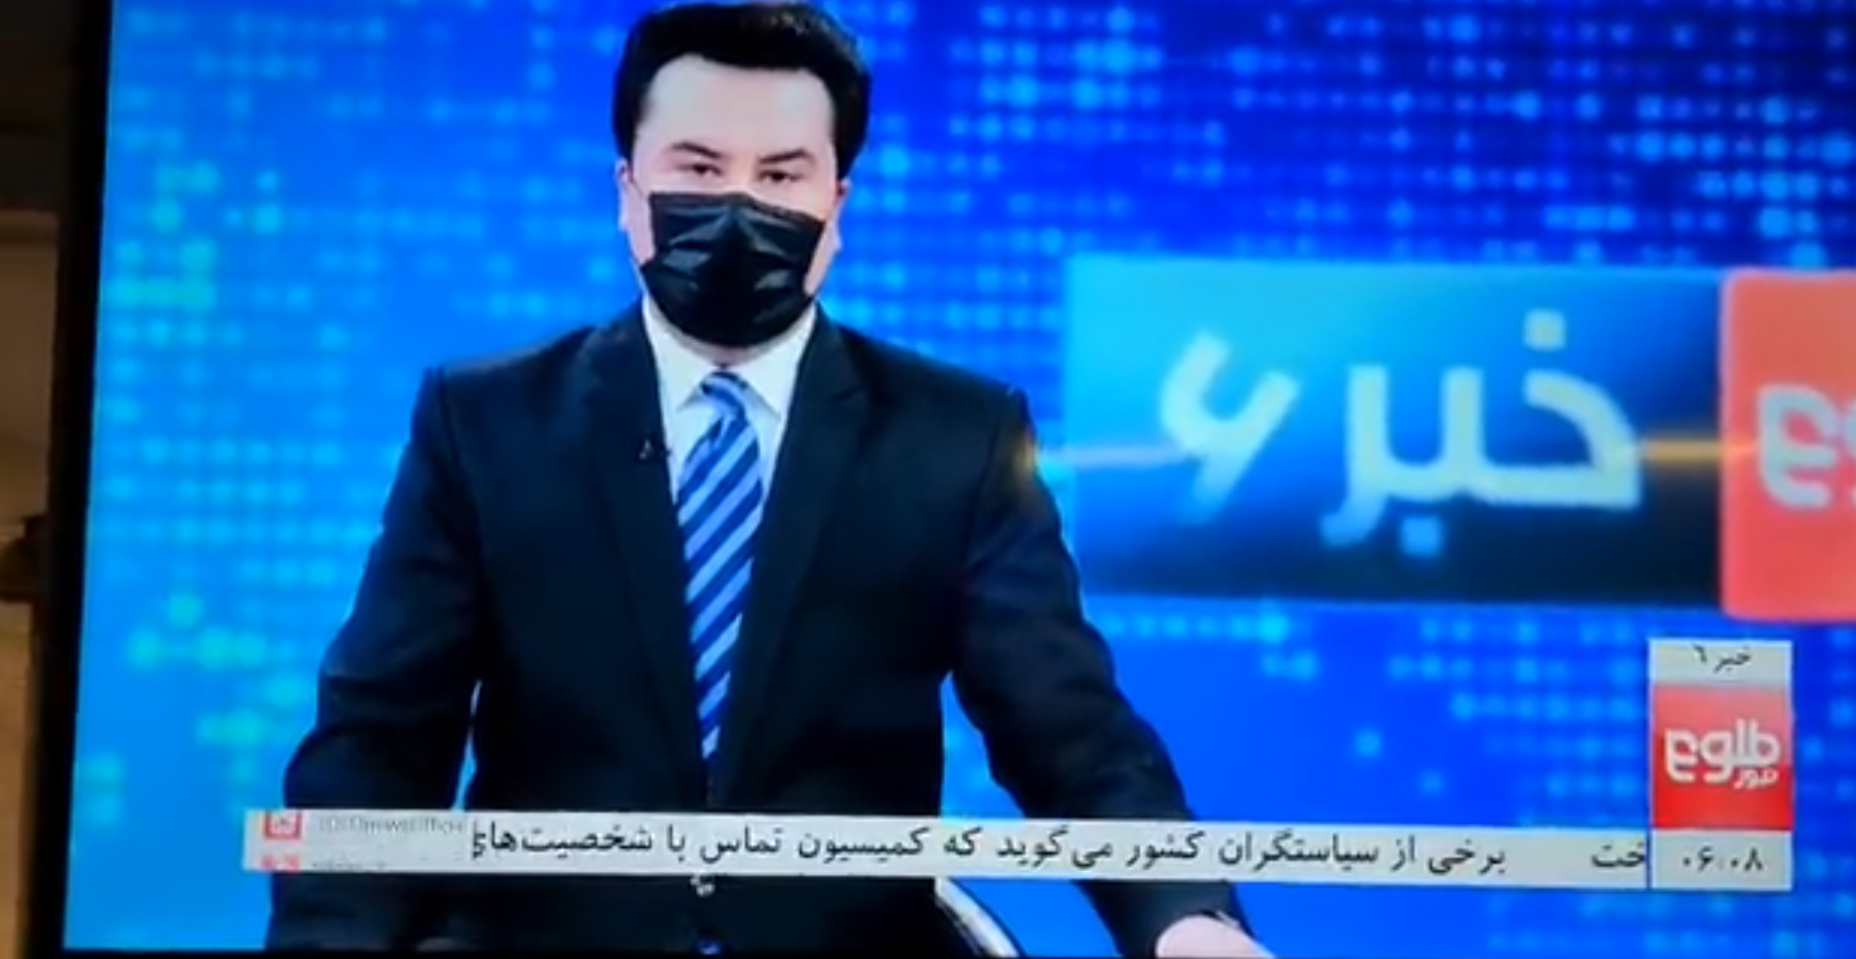 “Free Her Face”: Apresentadores de televisão afegãos tapam a cara num gesto de solidariedade com colegas do sexo feminino